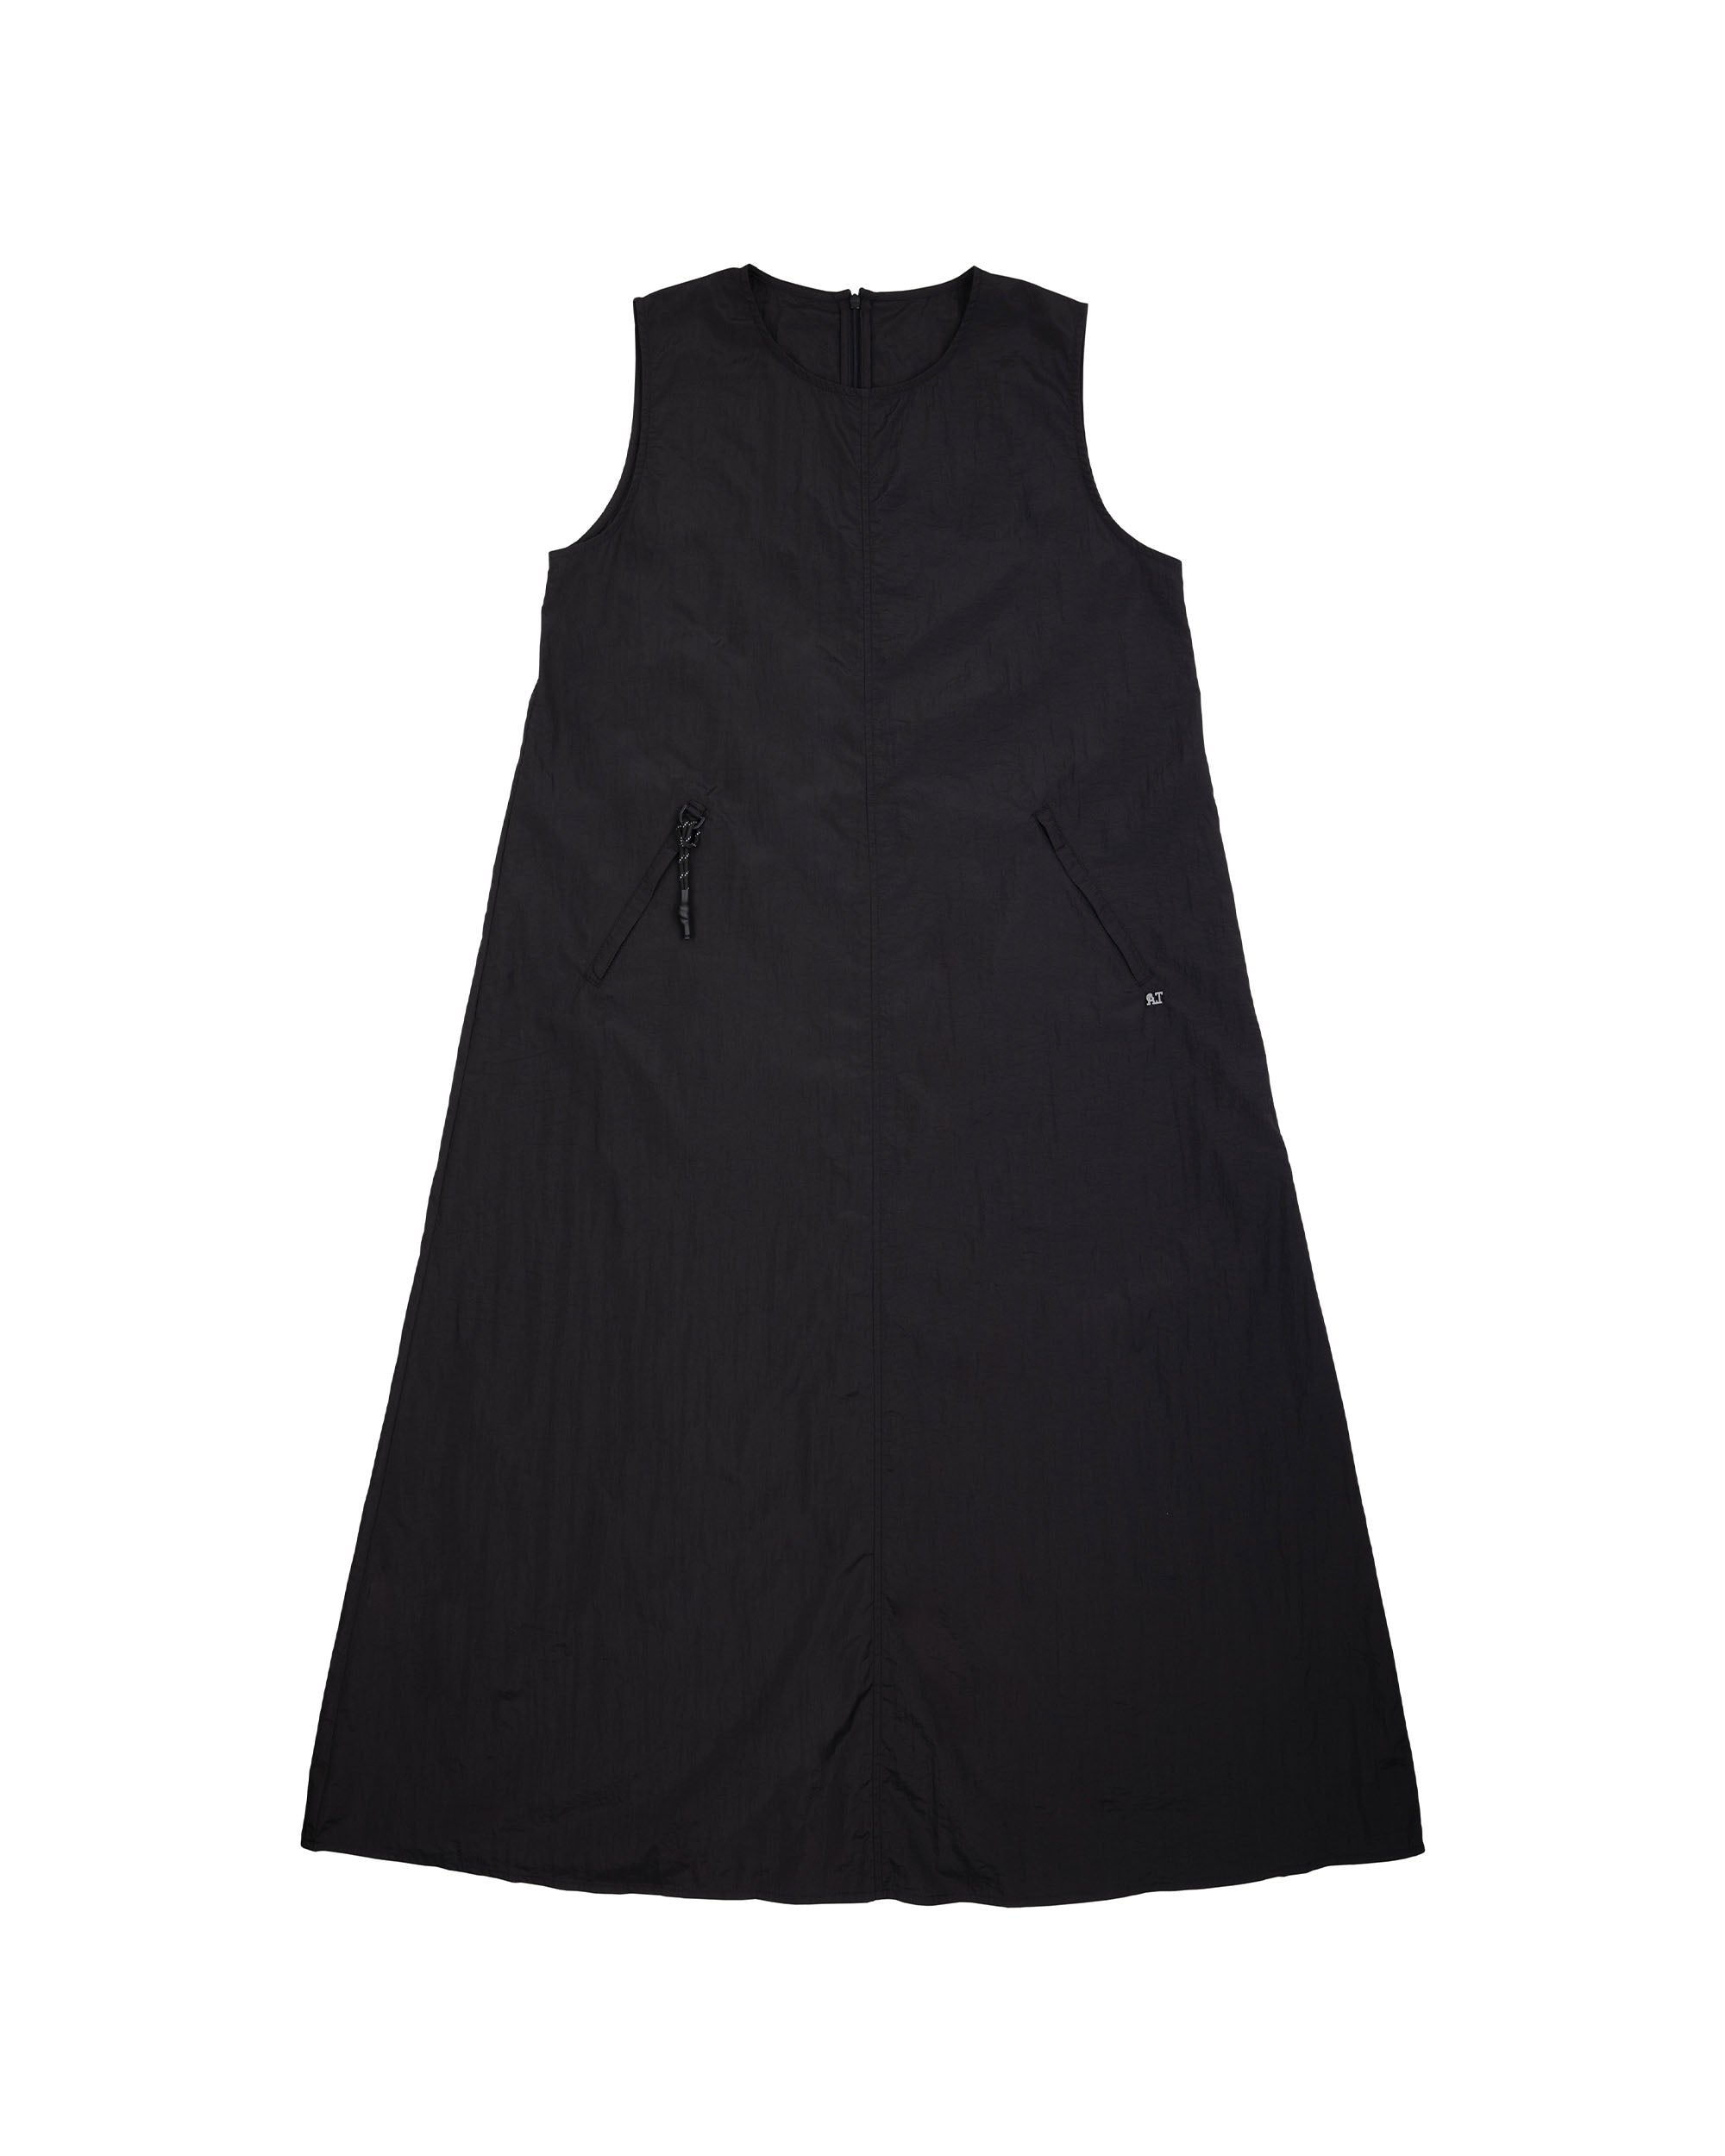 A.T OUTDOOR Nylon Zip Pocket Sleeveless Dress